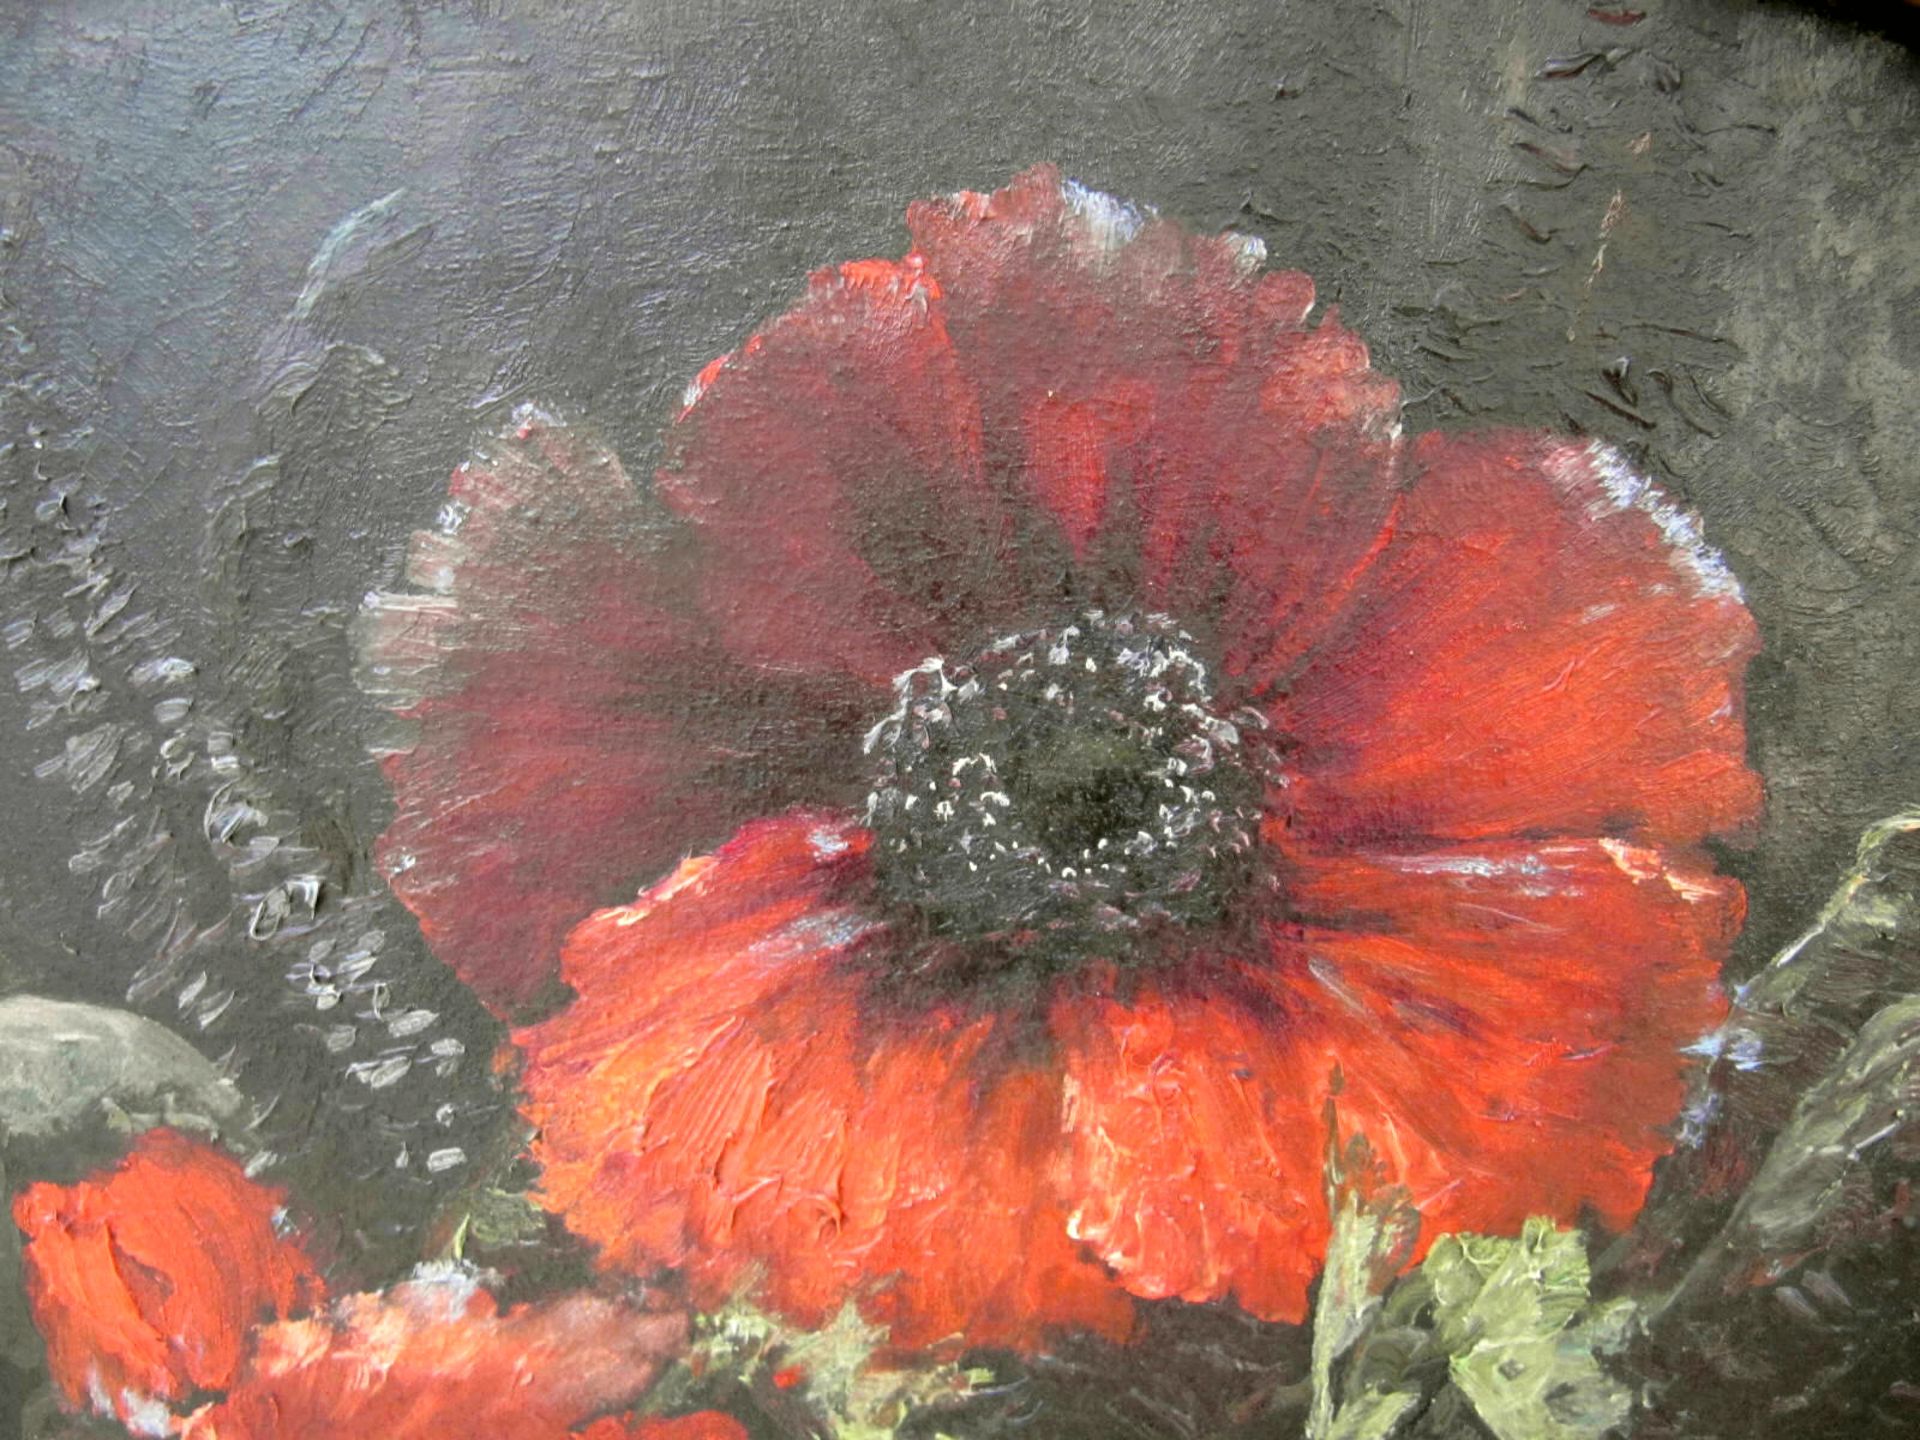 H. O. Schiele (19.Jh.) "Blumen-Stillleben" Öl/Leinwand, sig., 87 x 102 cm - Image 5 of 5